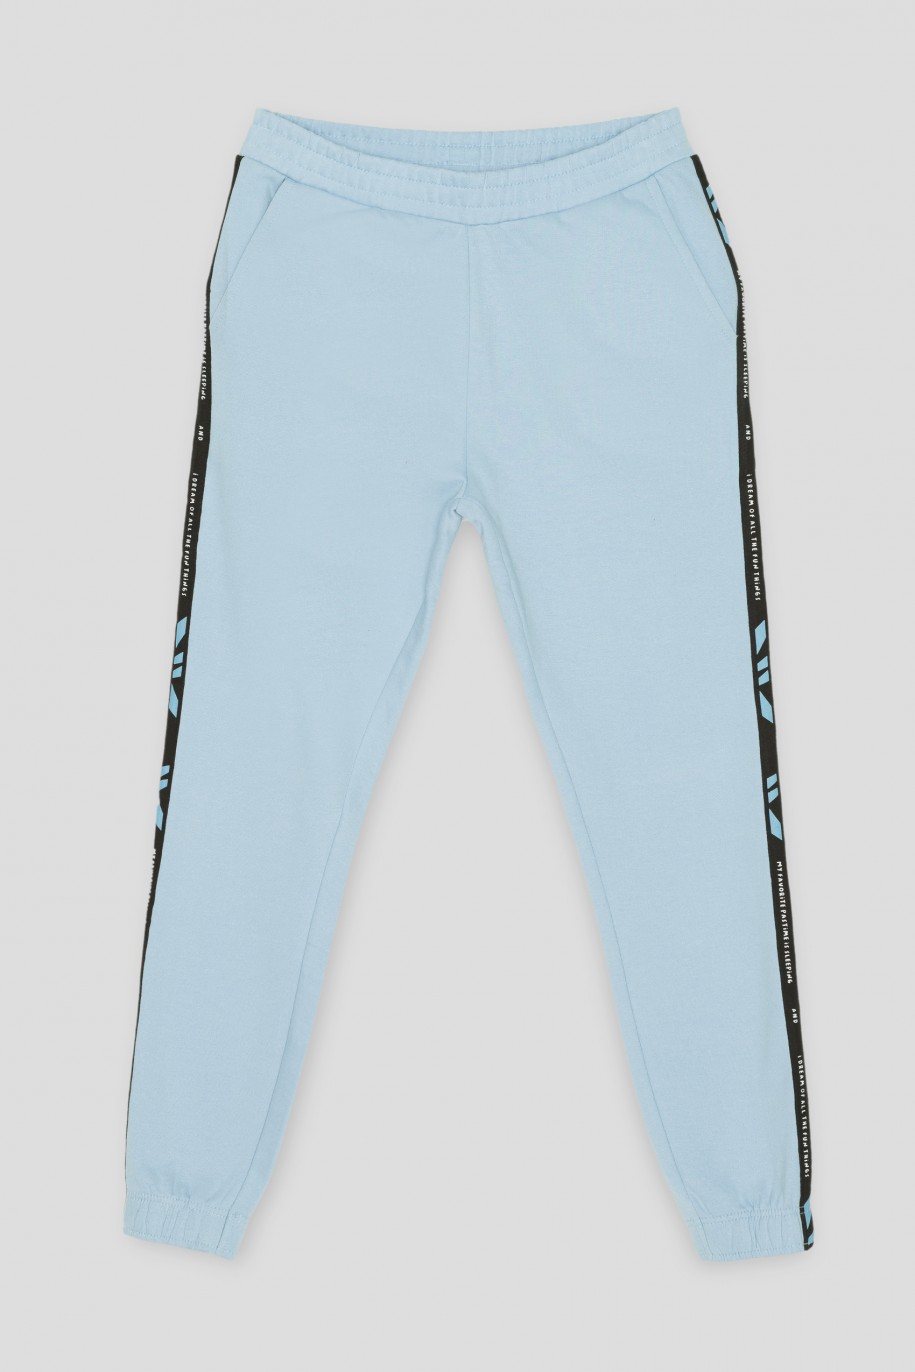 Błękitne spodnie dresowe z lampasami - 39995